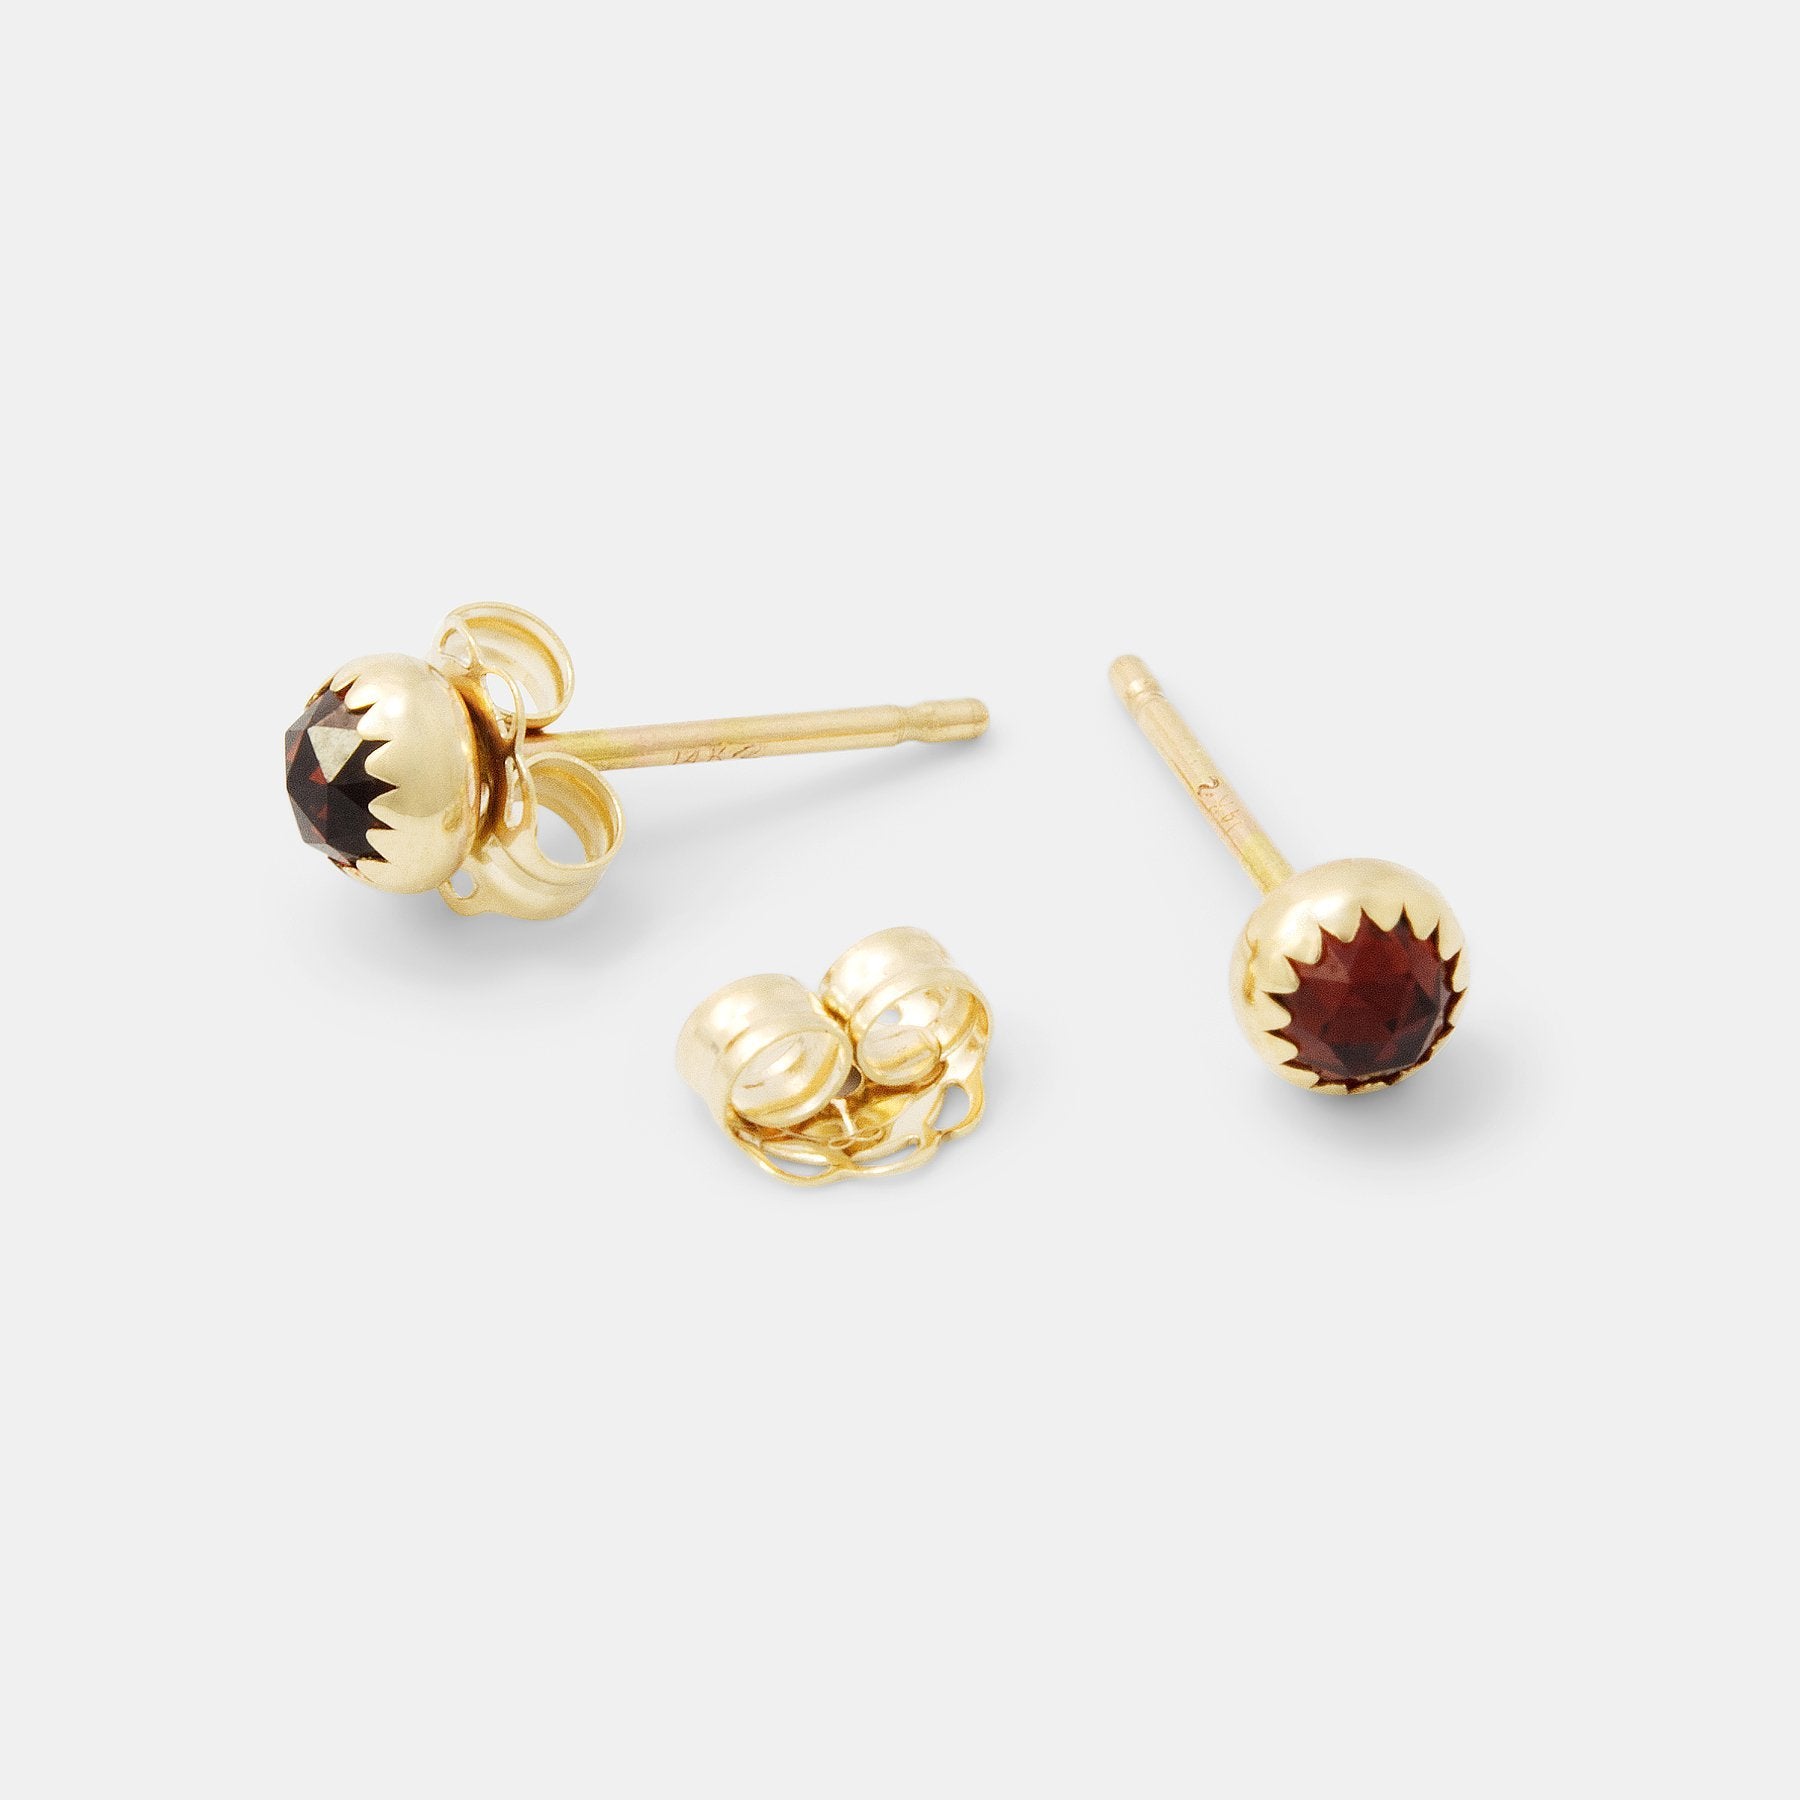 Garnet & gold stud earrings - Simone Walsh Jewellery Australia